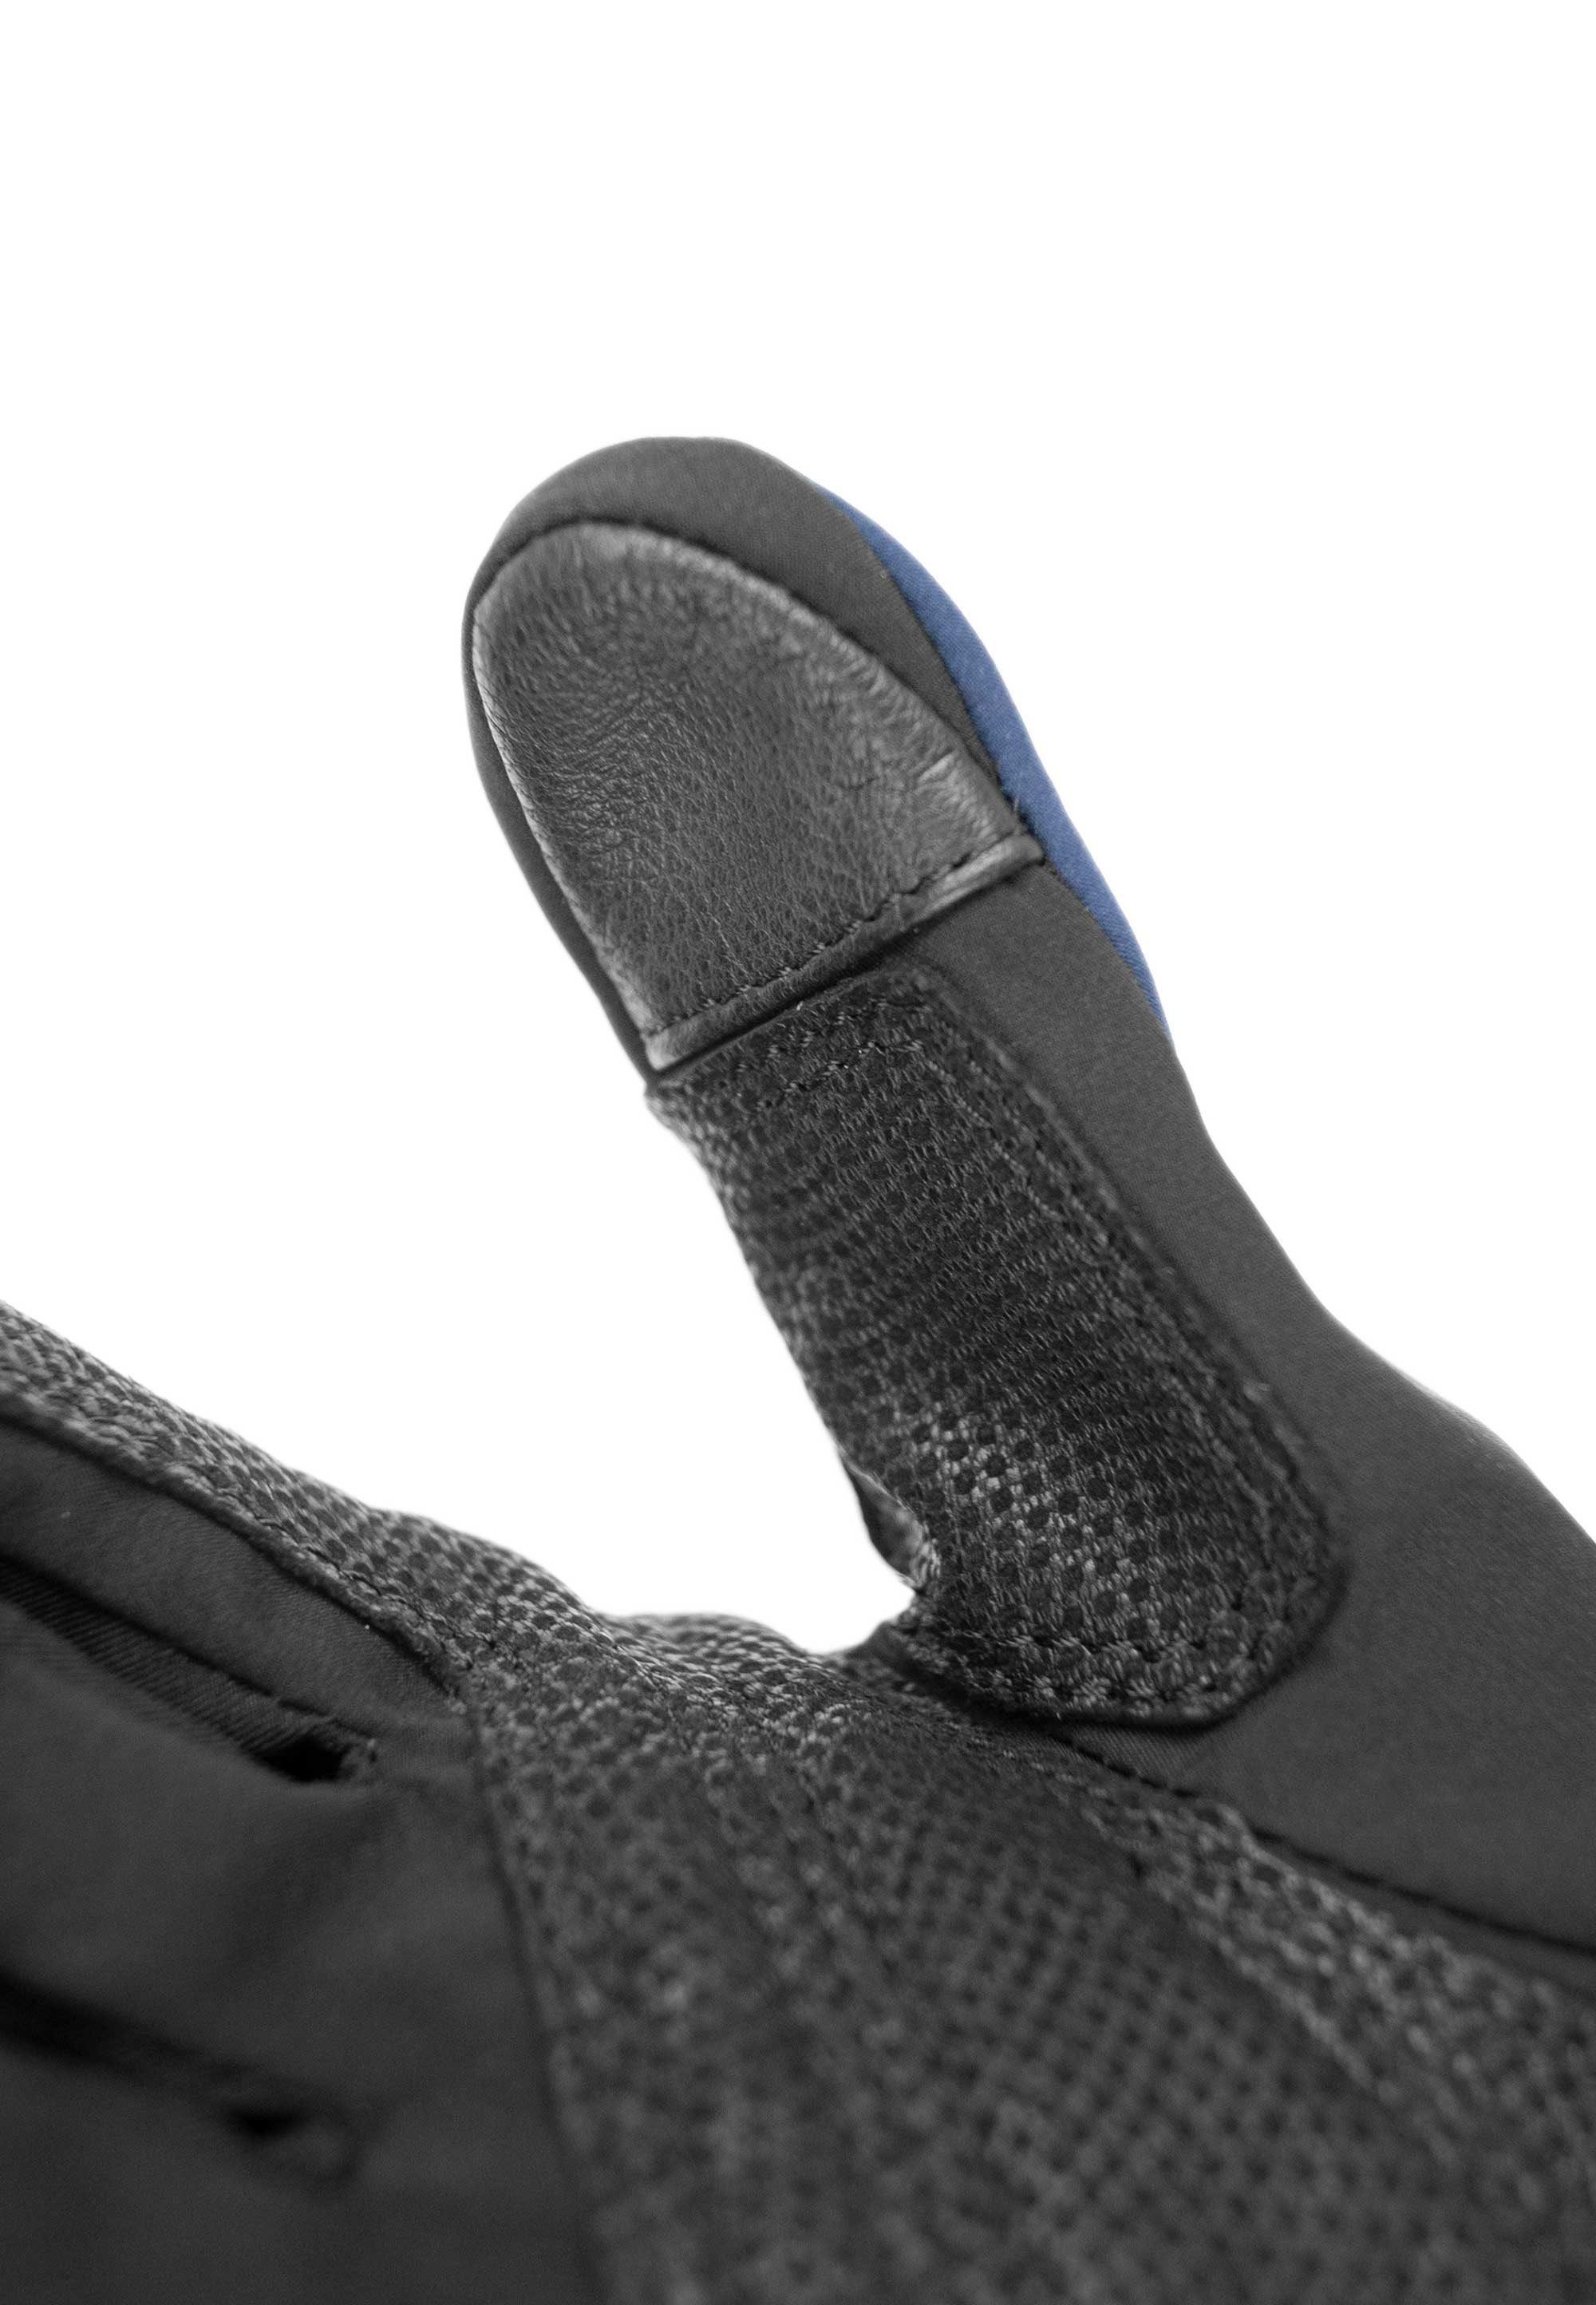 Skihandschuhe Trooper schwarz-blau Lady Reusch TOUCH-TEC™ aus Material winddichtem